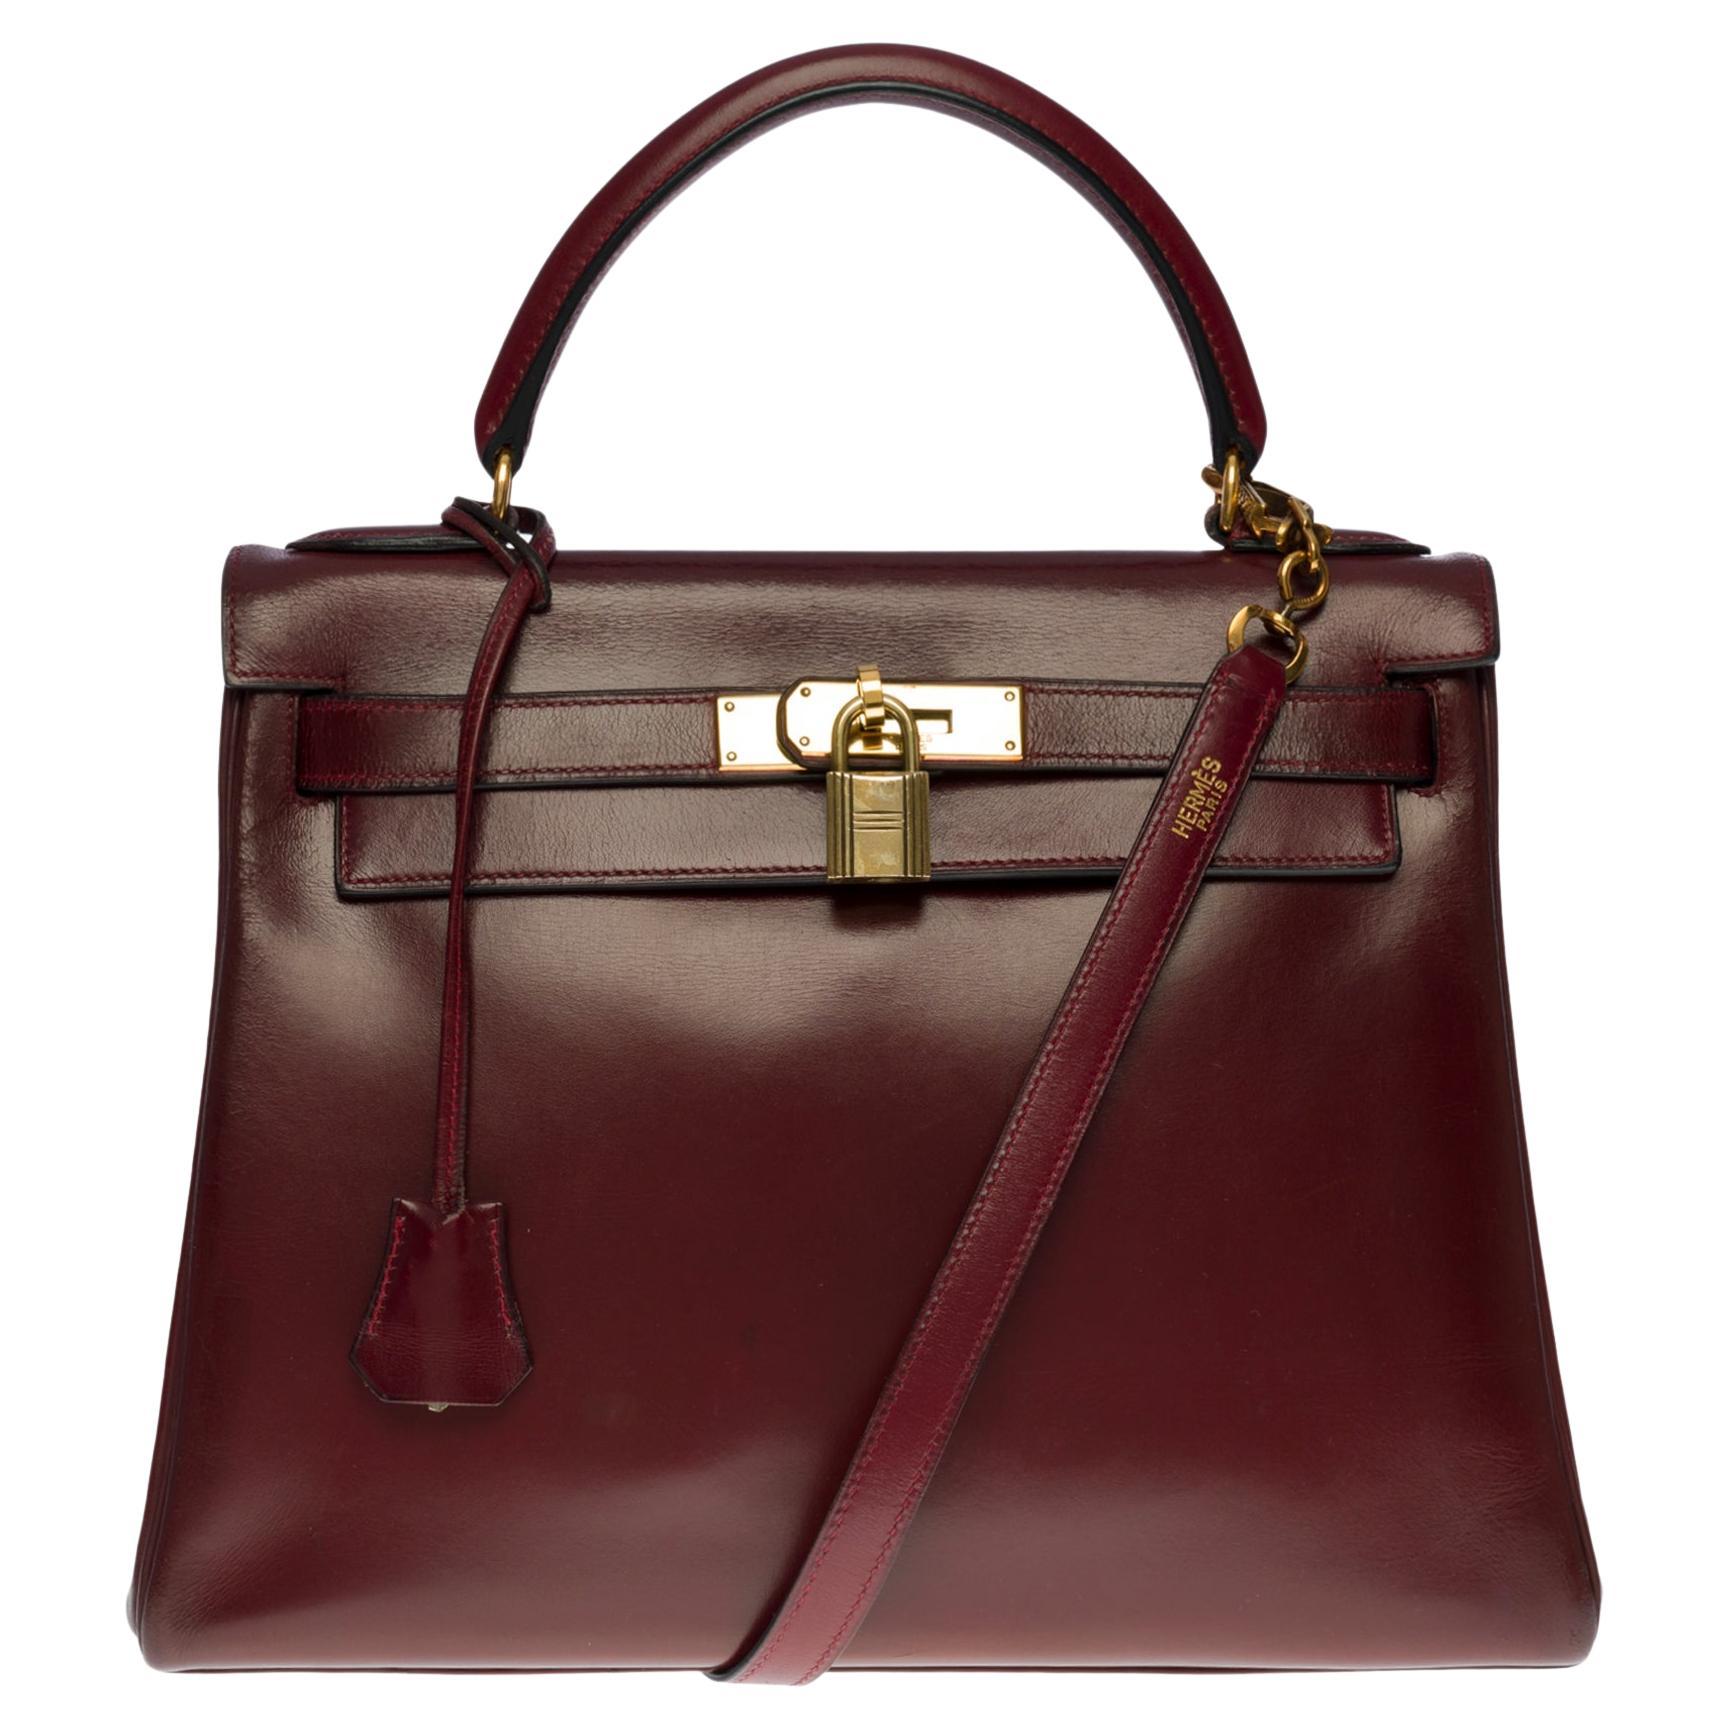 Hermes Kelly 28 retourne handbag strap in Rouge H (Burgundy) box calfskin,GHW